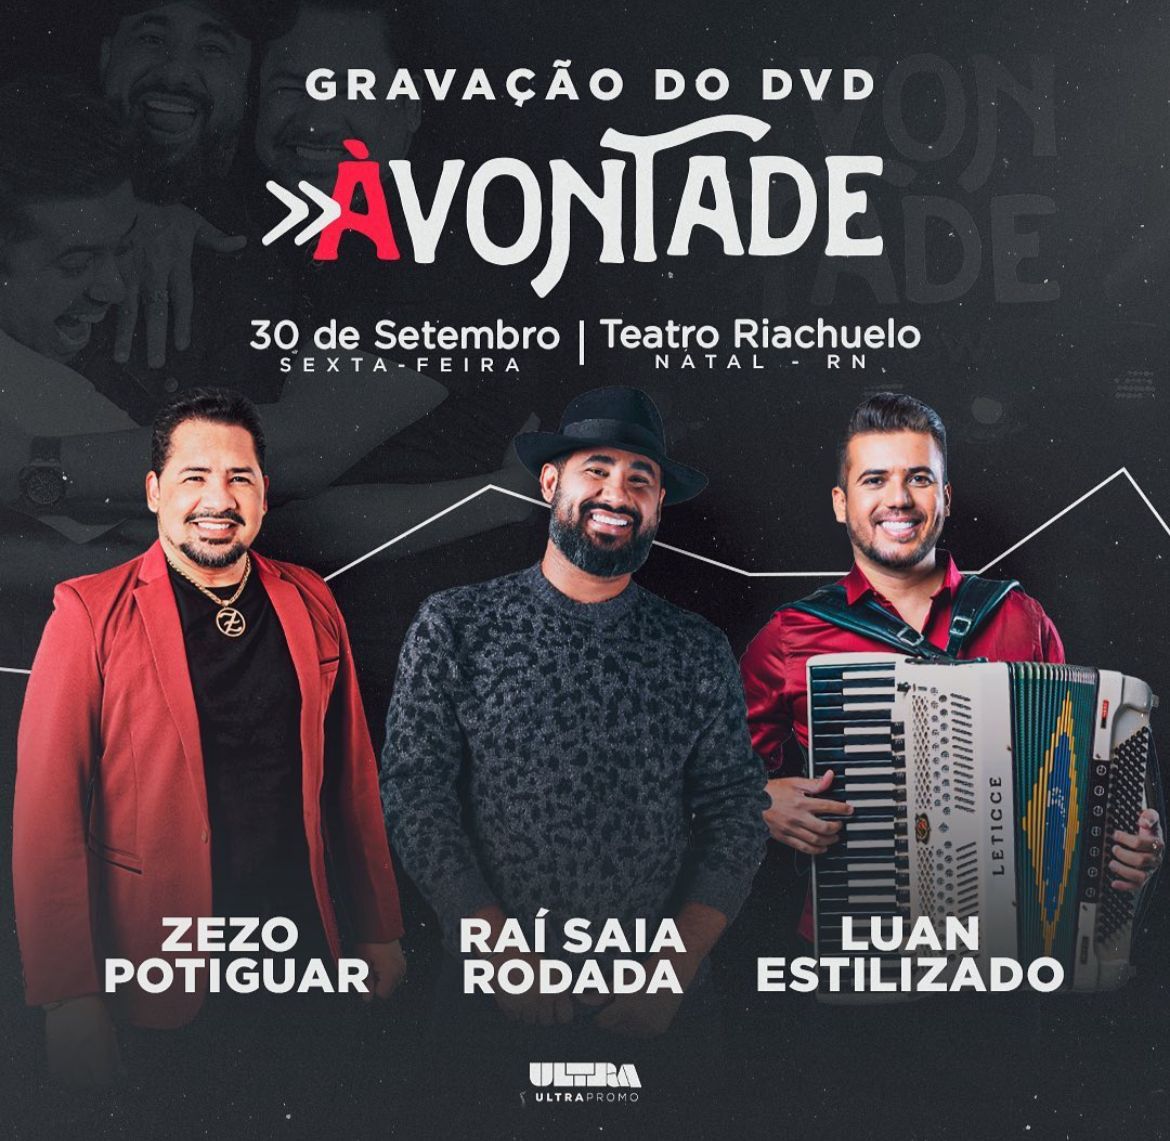 Luan Estilizado, Raí Saia Rodada e Zezo Potiguar se unem em DVD 'À Vontade'